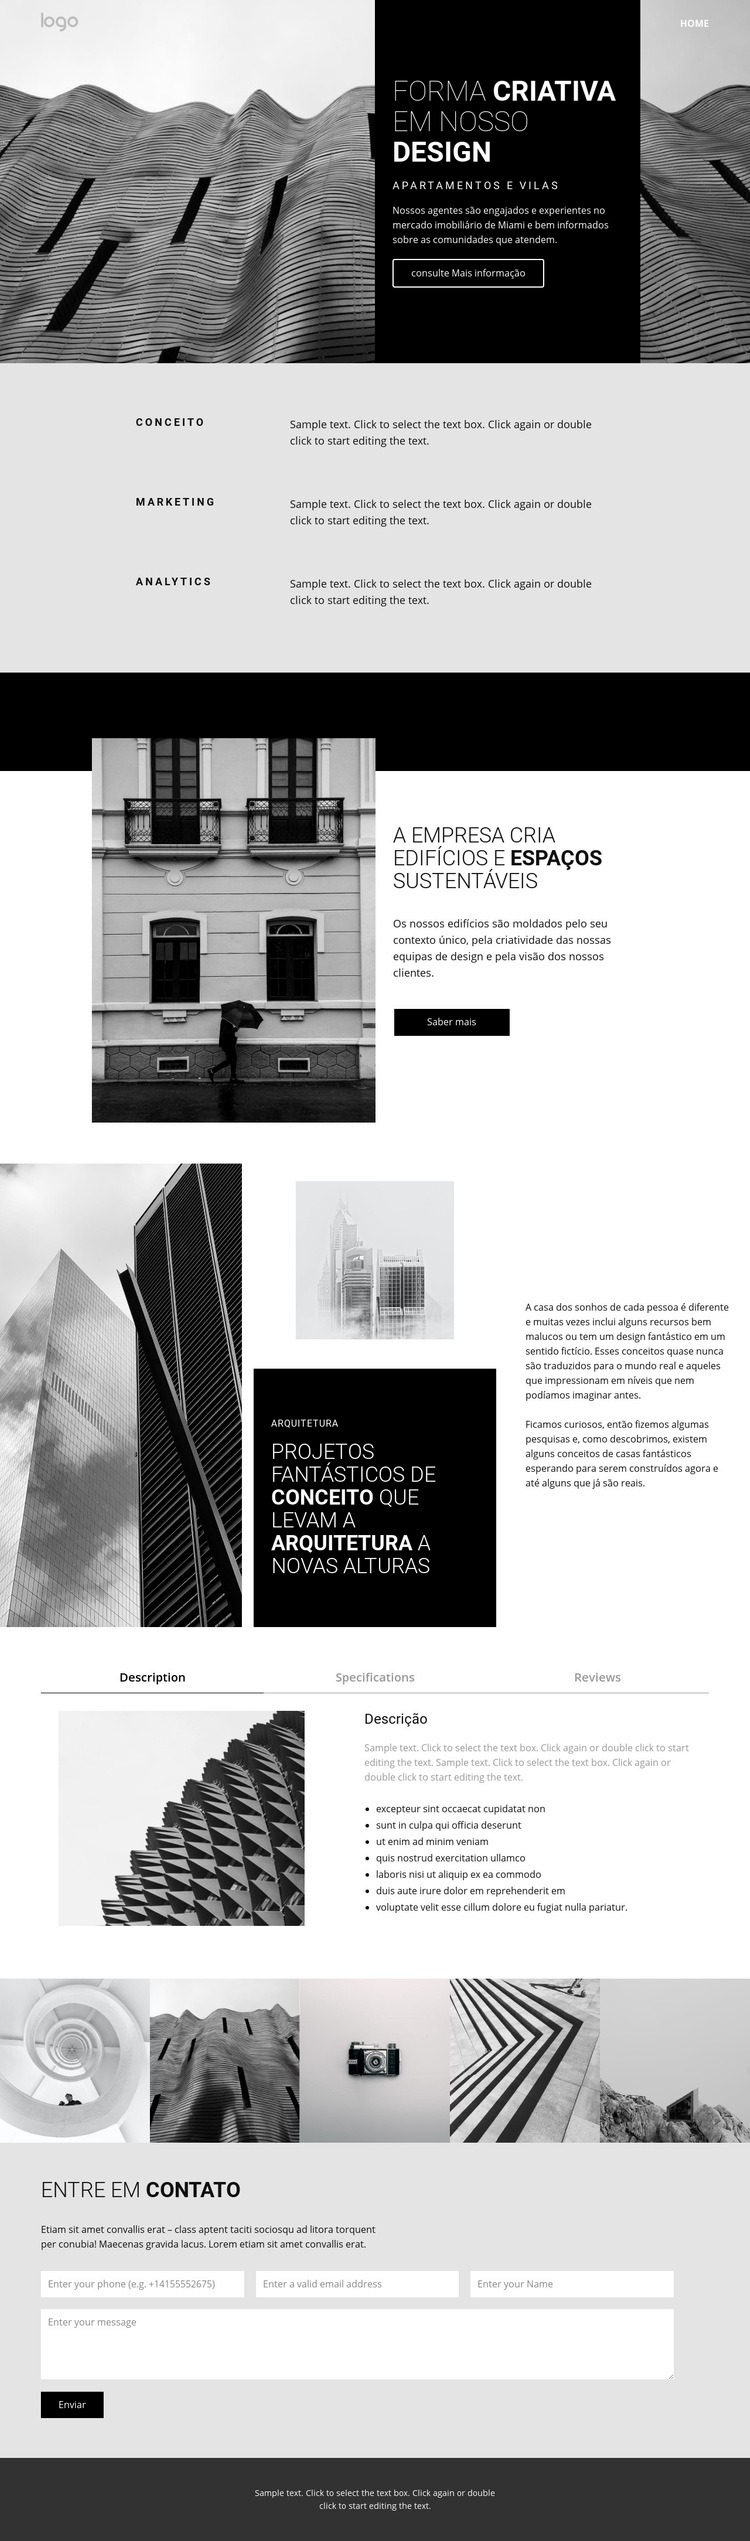 Arquitetura de conceito criativo Design do site